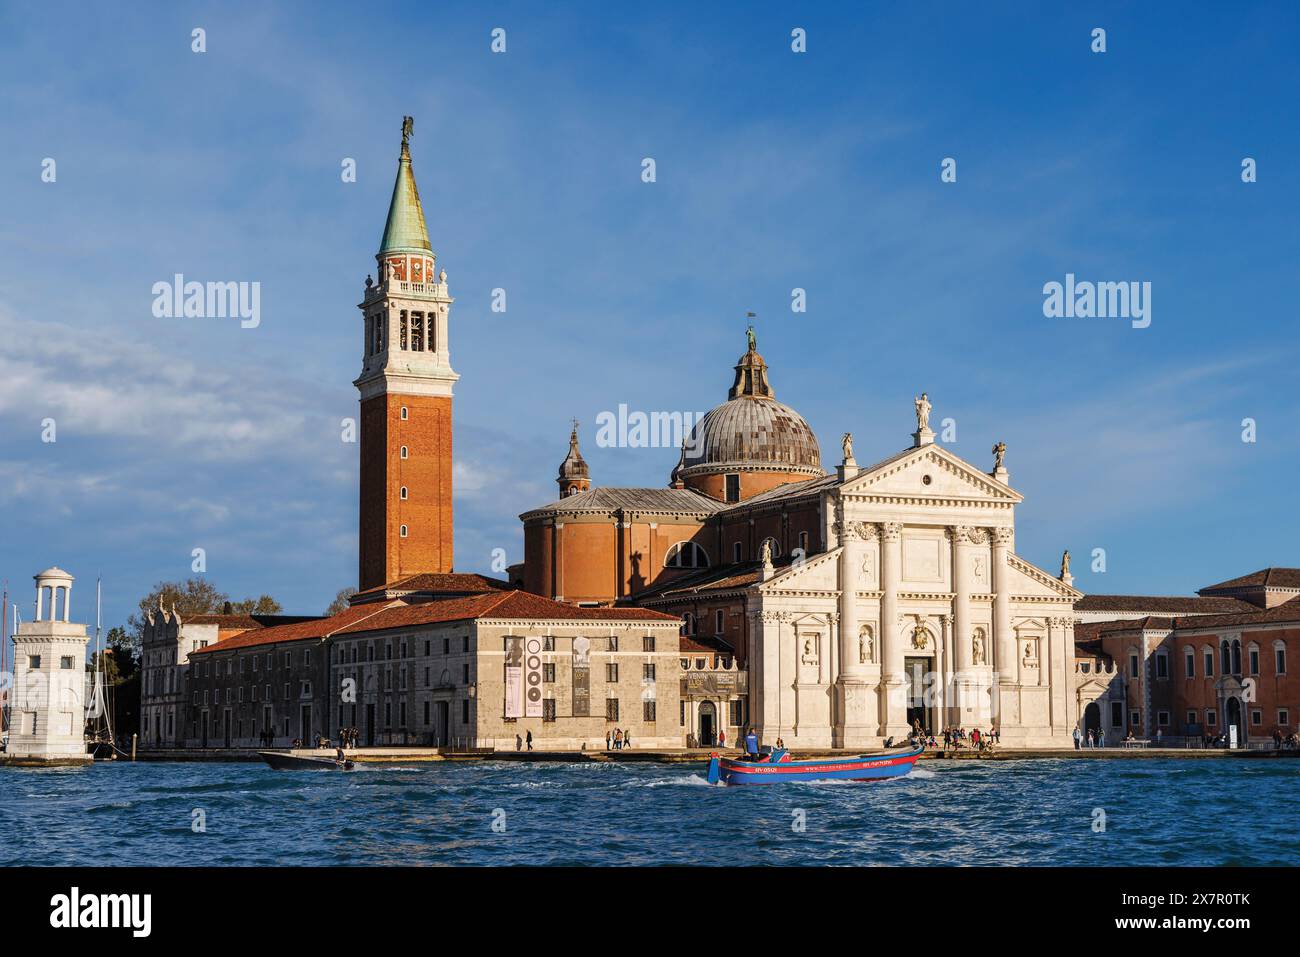 Venedig, Provinz Venedig, Region Venetien, Italien. Die isola oder die Insel San Giorgio und die gleichnamige Kirche. Venedig ist ein UNESCO-Weltkulturerbe Stockfoto